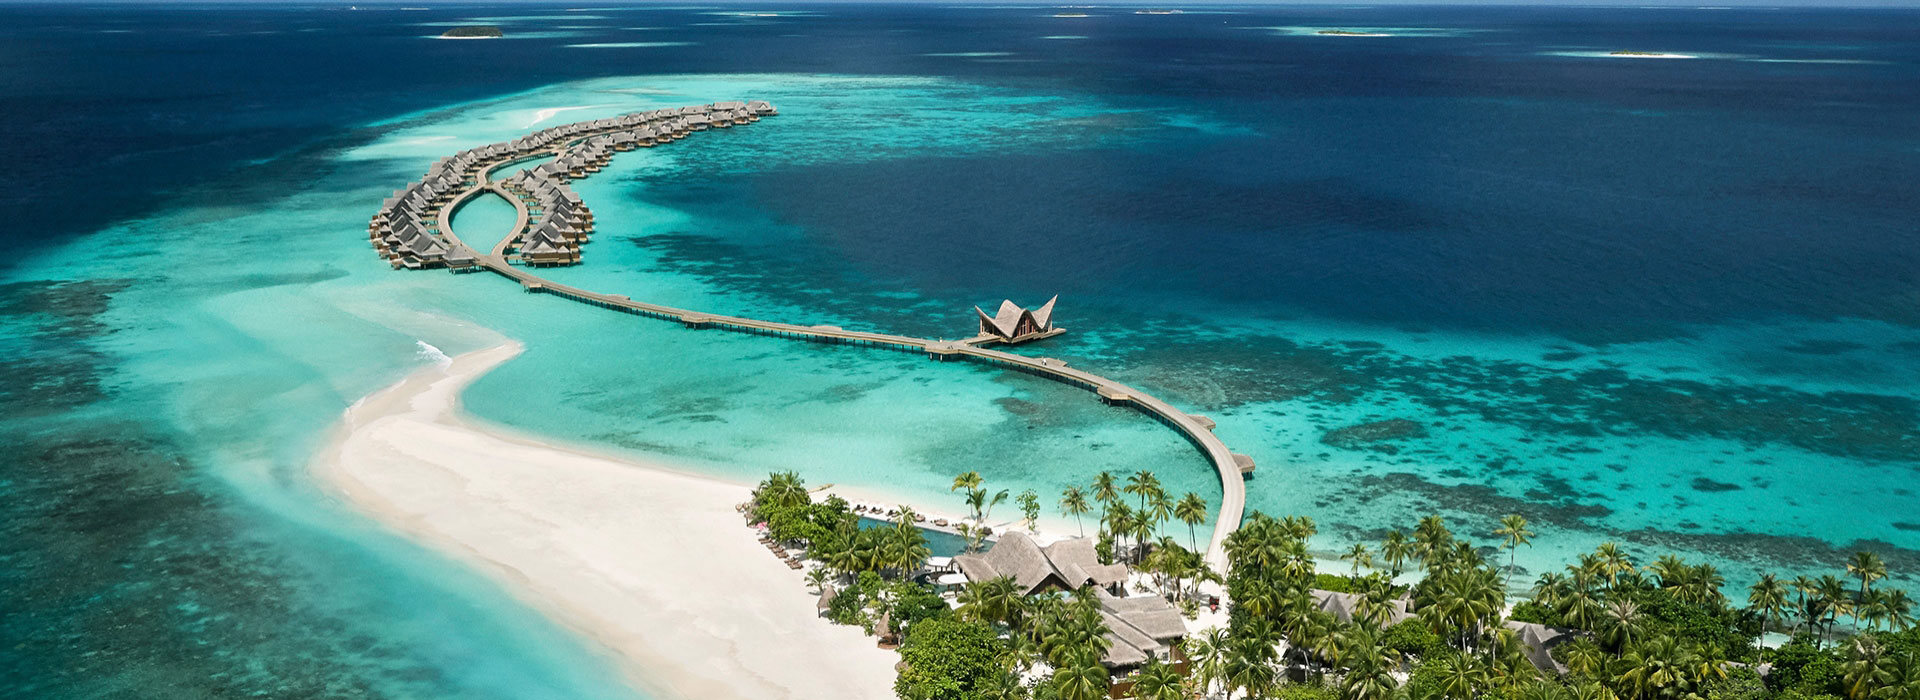 Teil maledivischer Insel mit Wasservillen